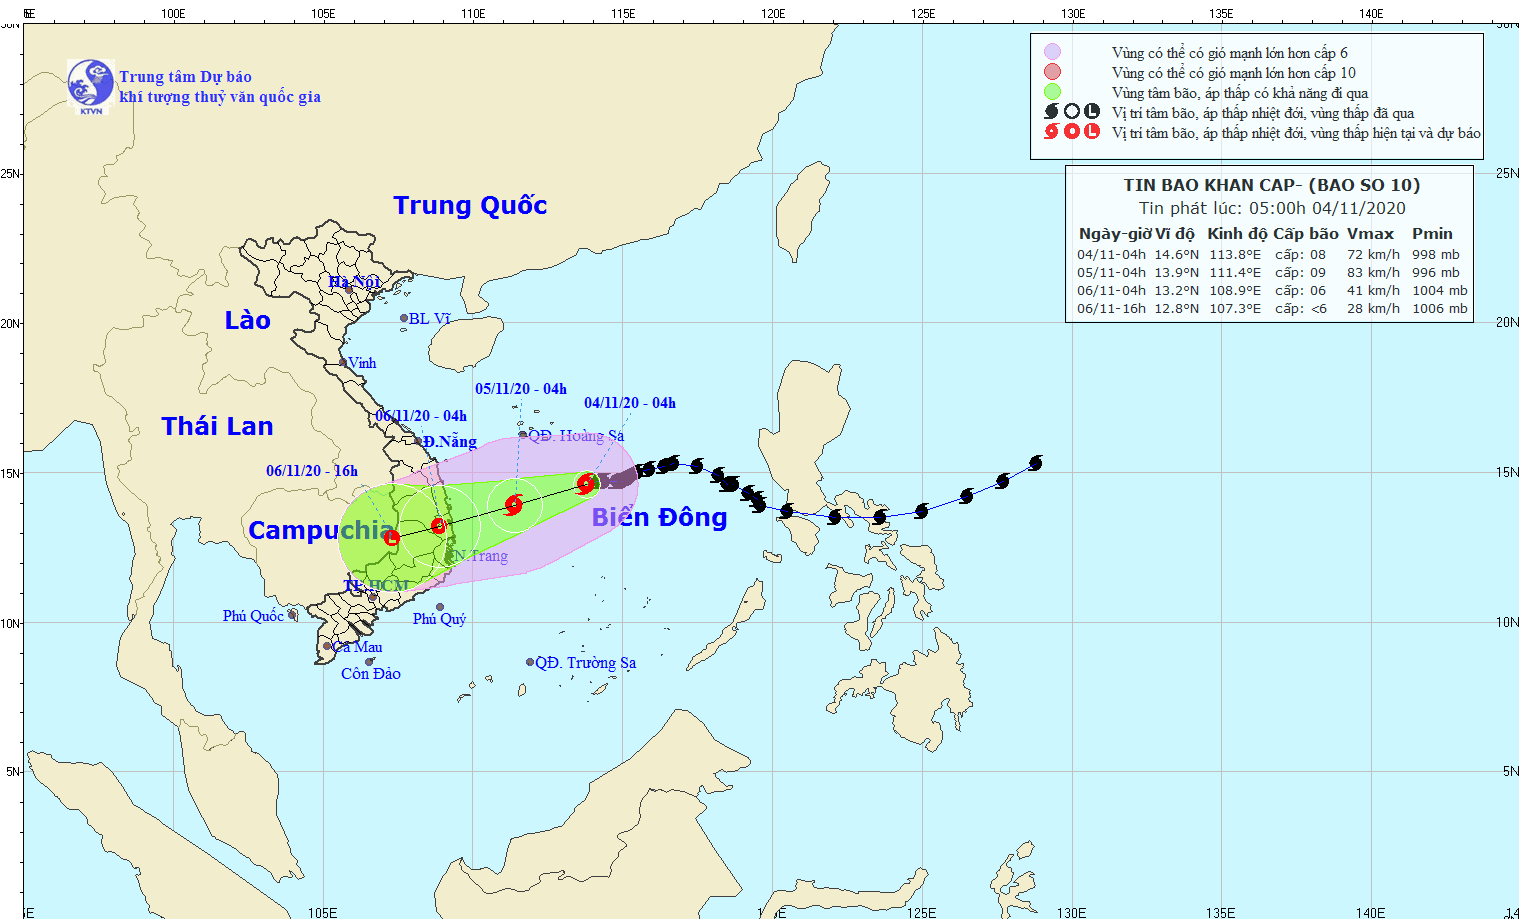 Diễn biến bão số 10: 24h tới cách Quảng Ngãi 230km, gió giật cấp 11